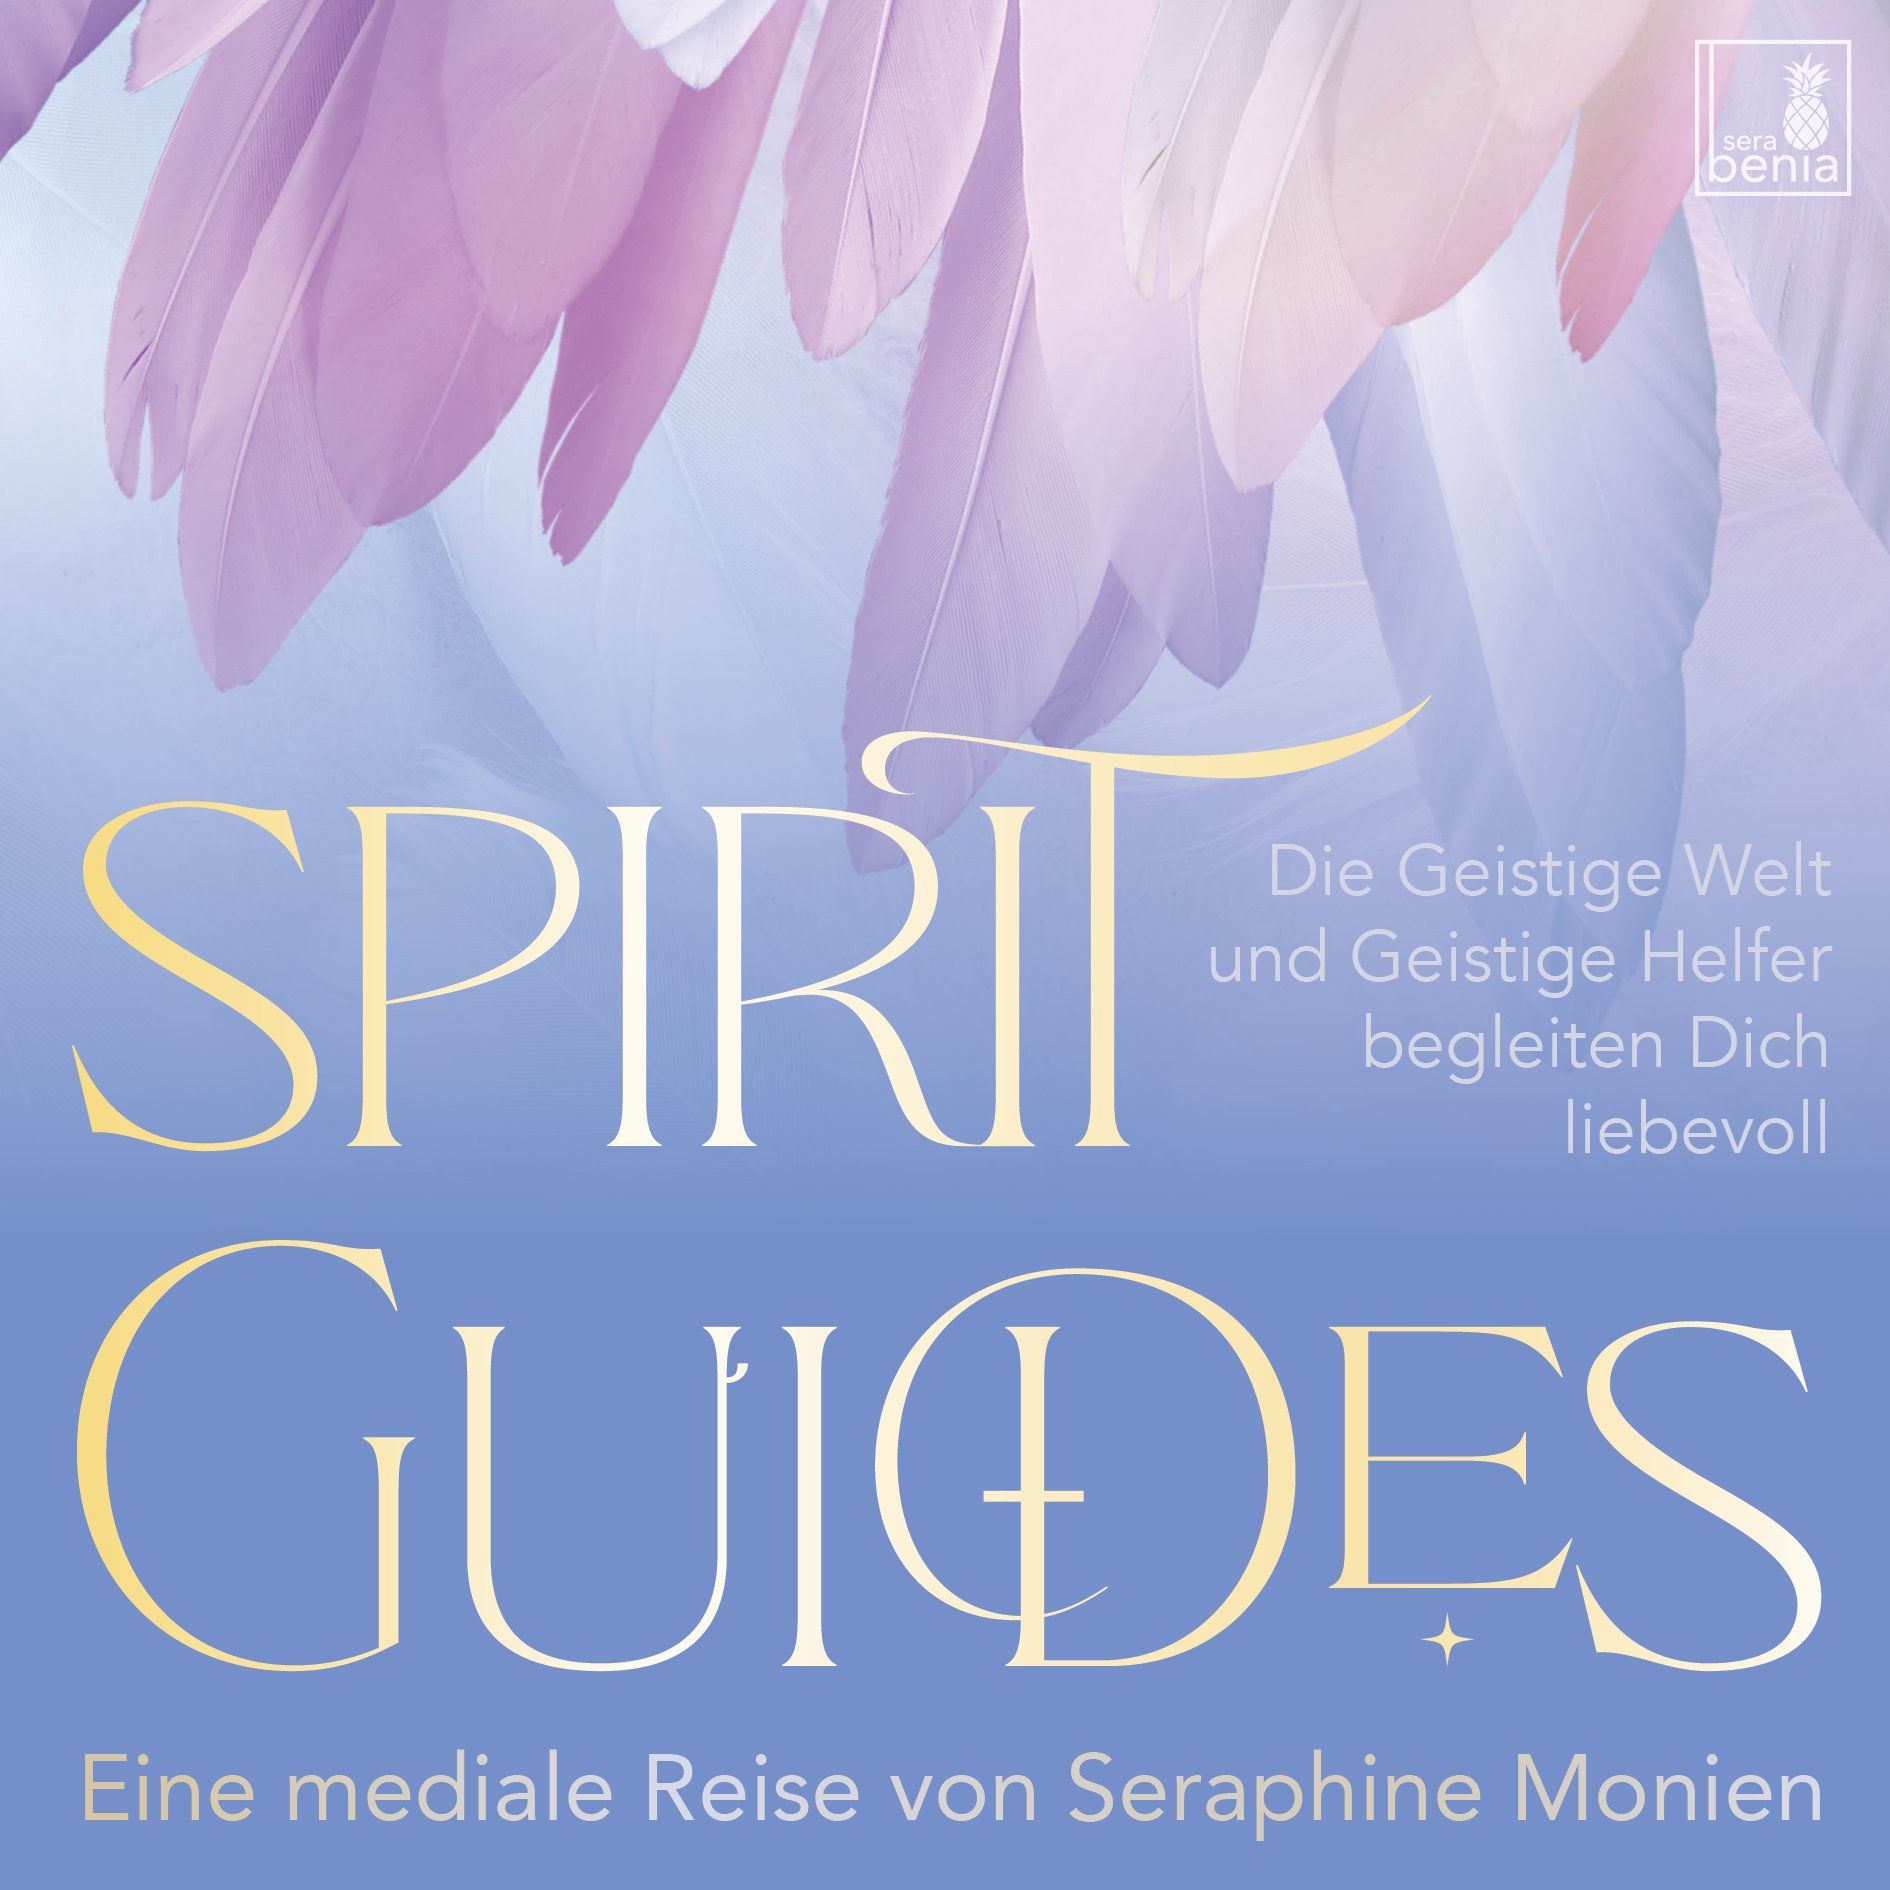 CD cover - Spirit Guides Die Geistige Welt und Geistige Helfer begleiten Dich liebevoll Eine mediale Reise von Seraphine Monien